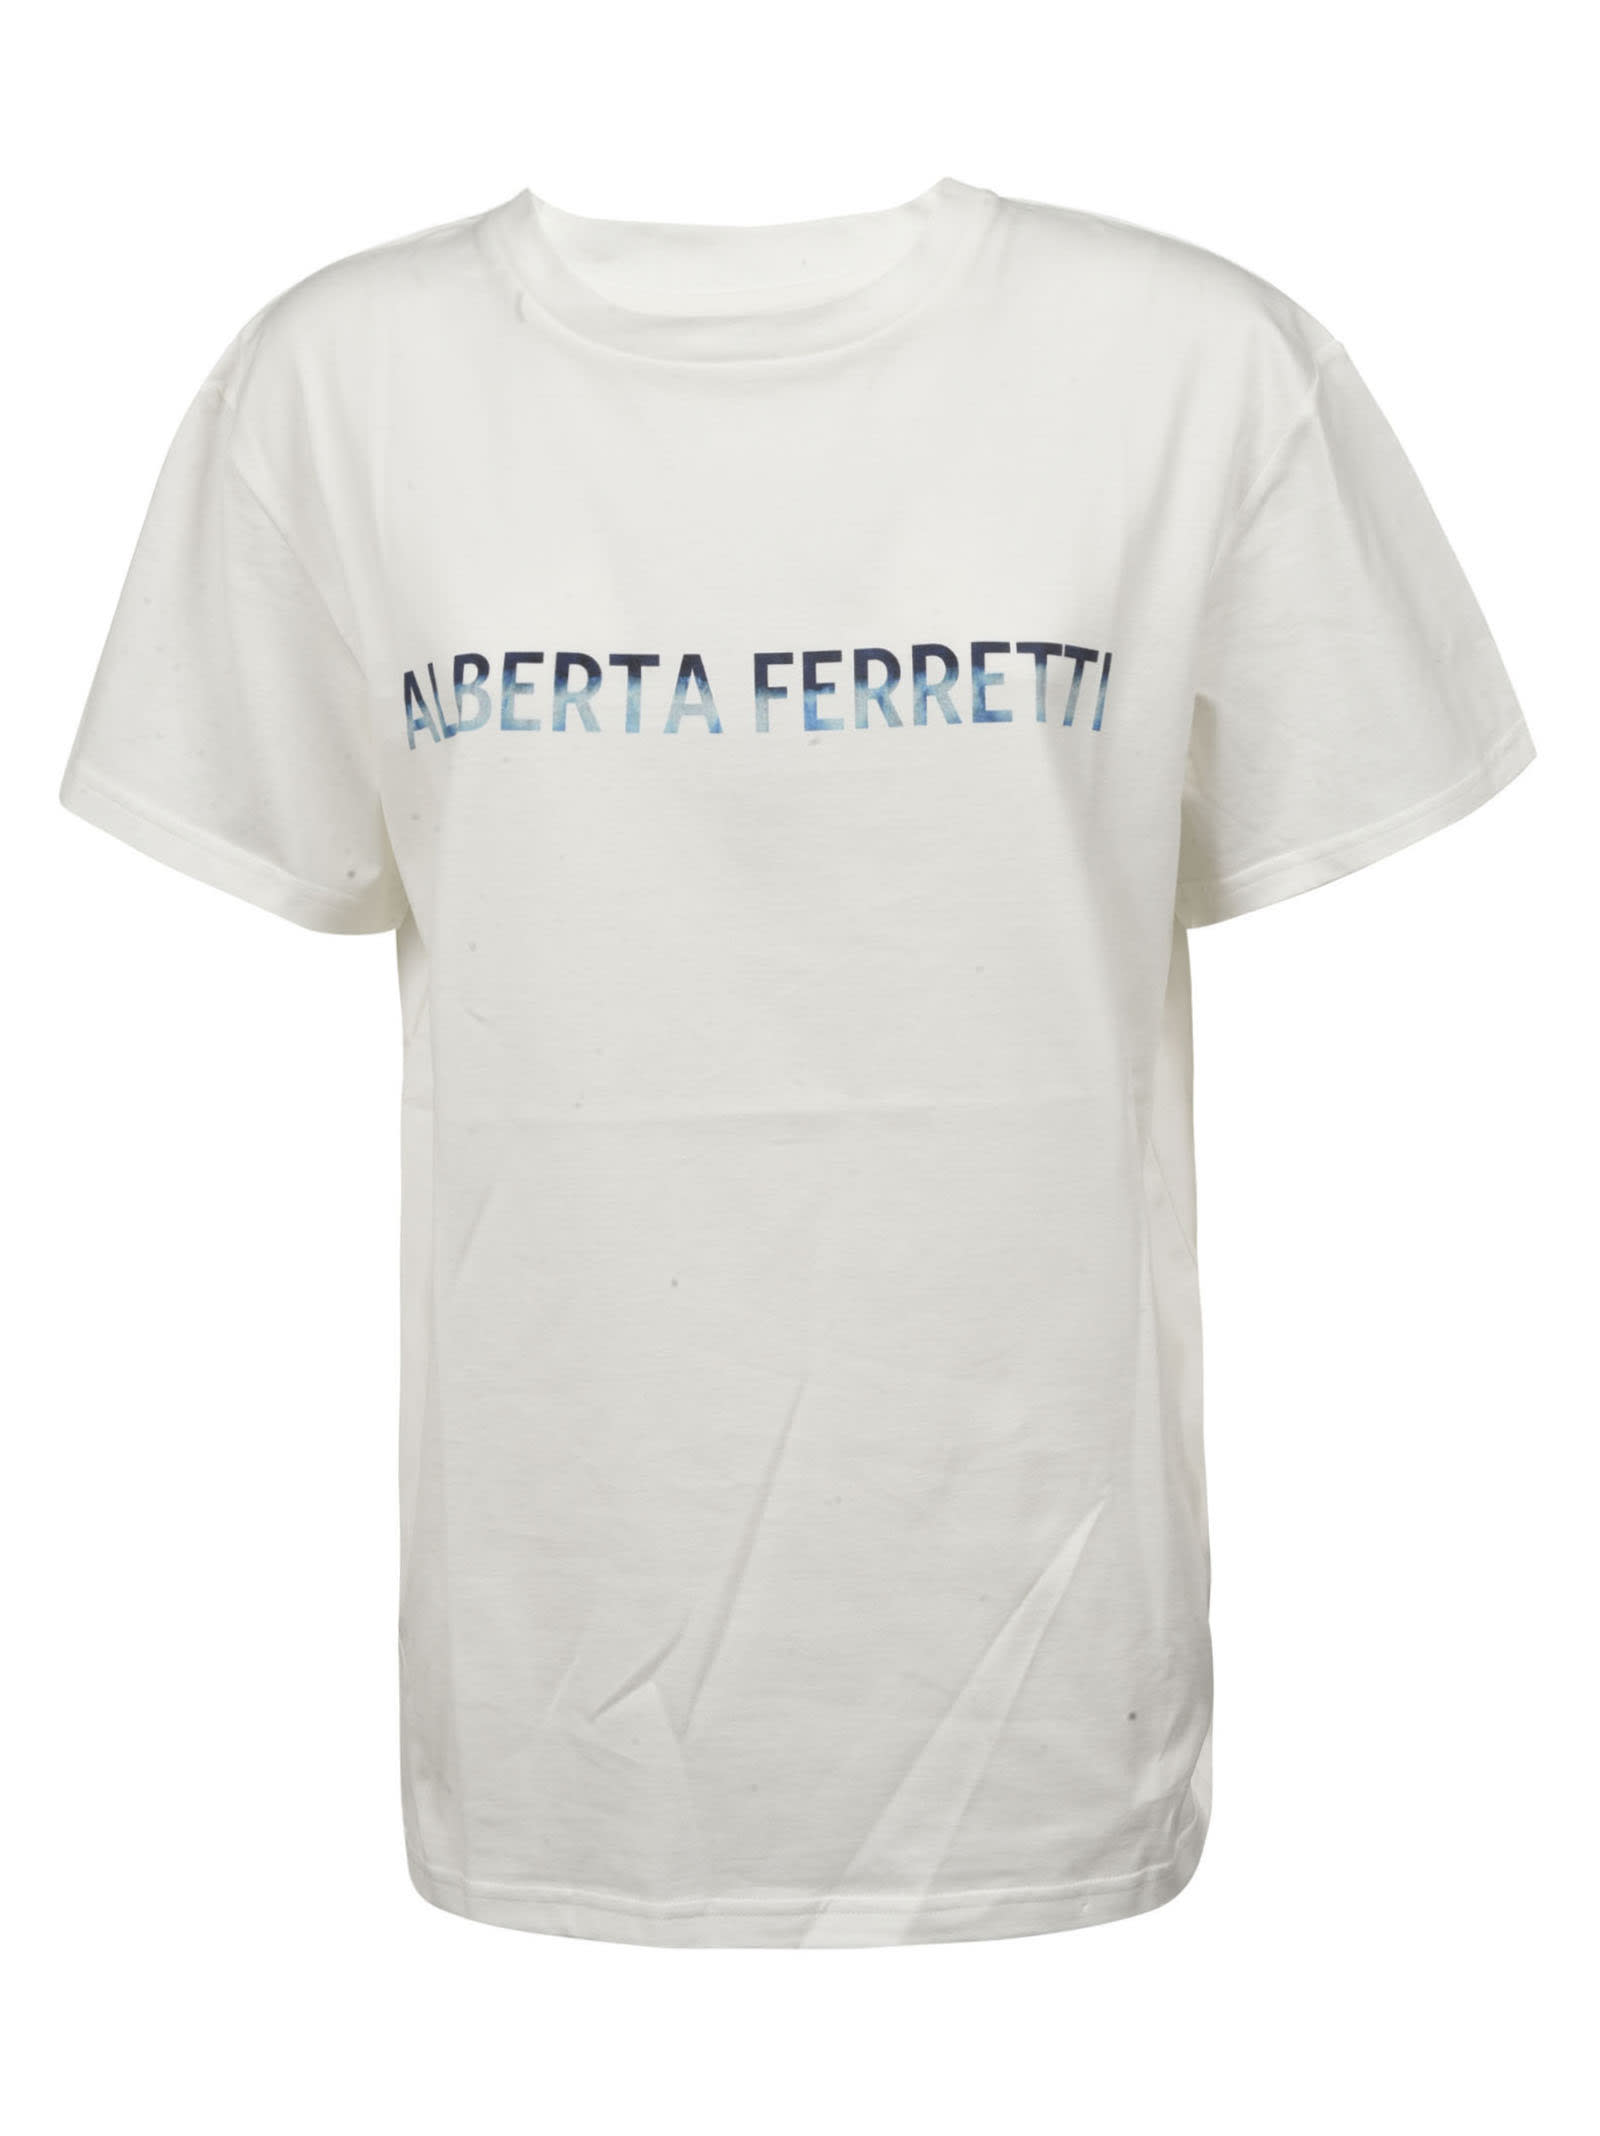 Alberta Ferretti T-shirts REGULAR FIT LOGO T-SHIRT